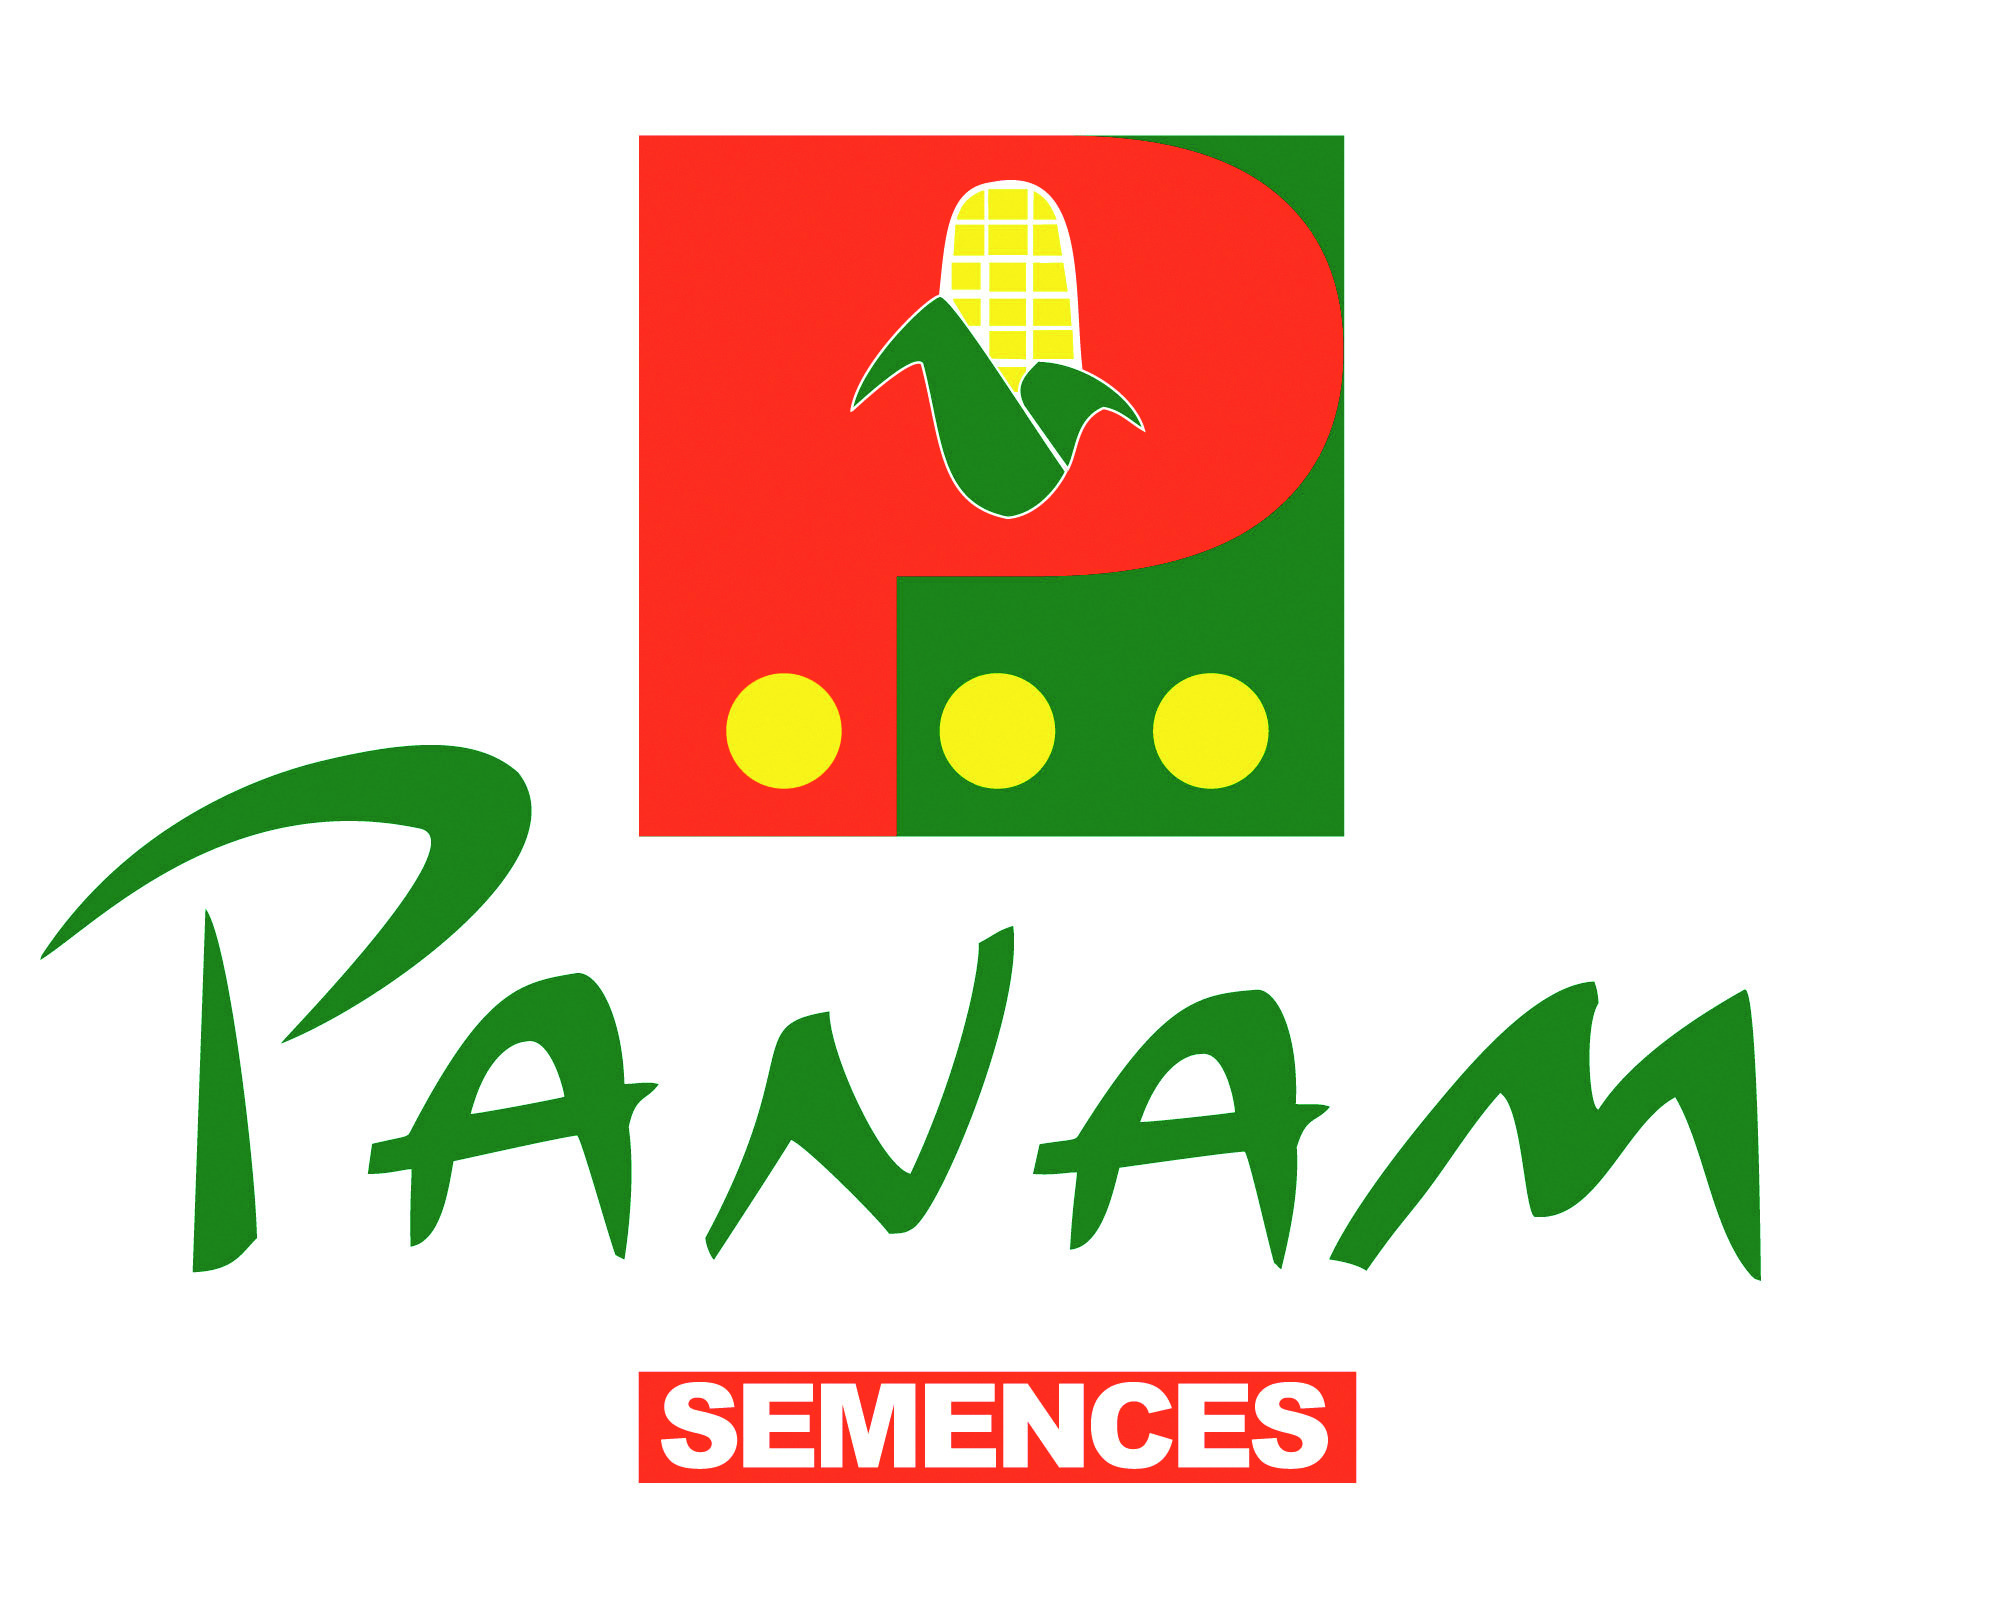 PANAM